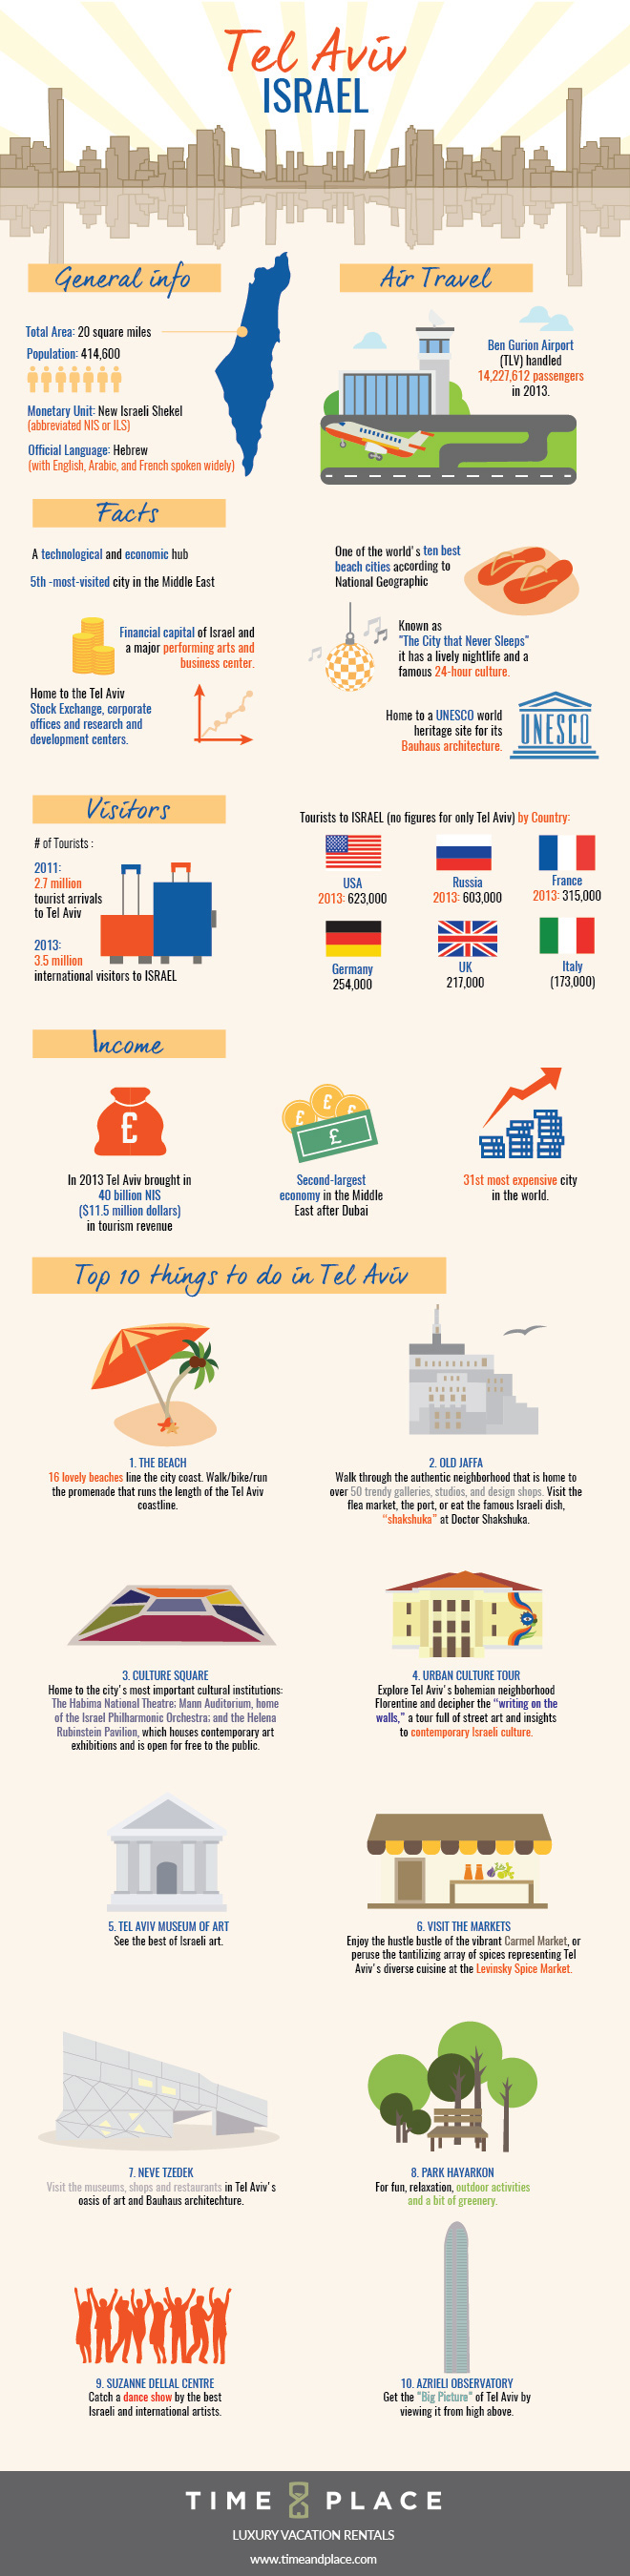 Tel Aviv Travel Infographic